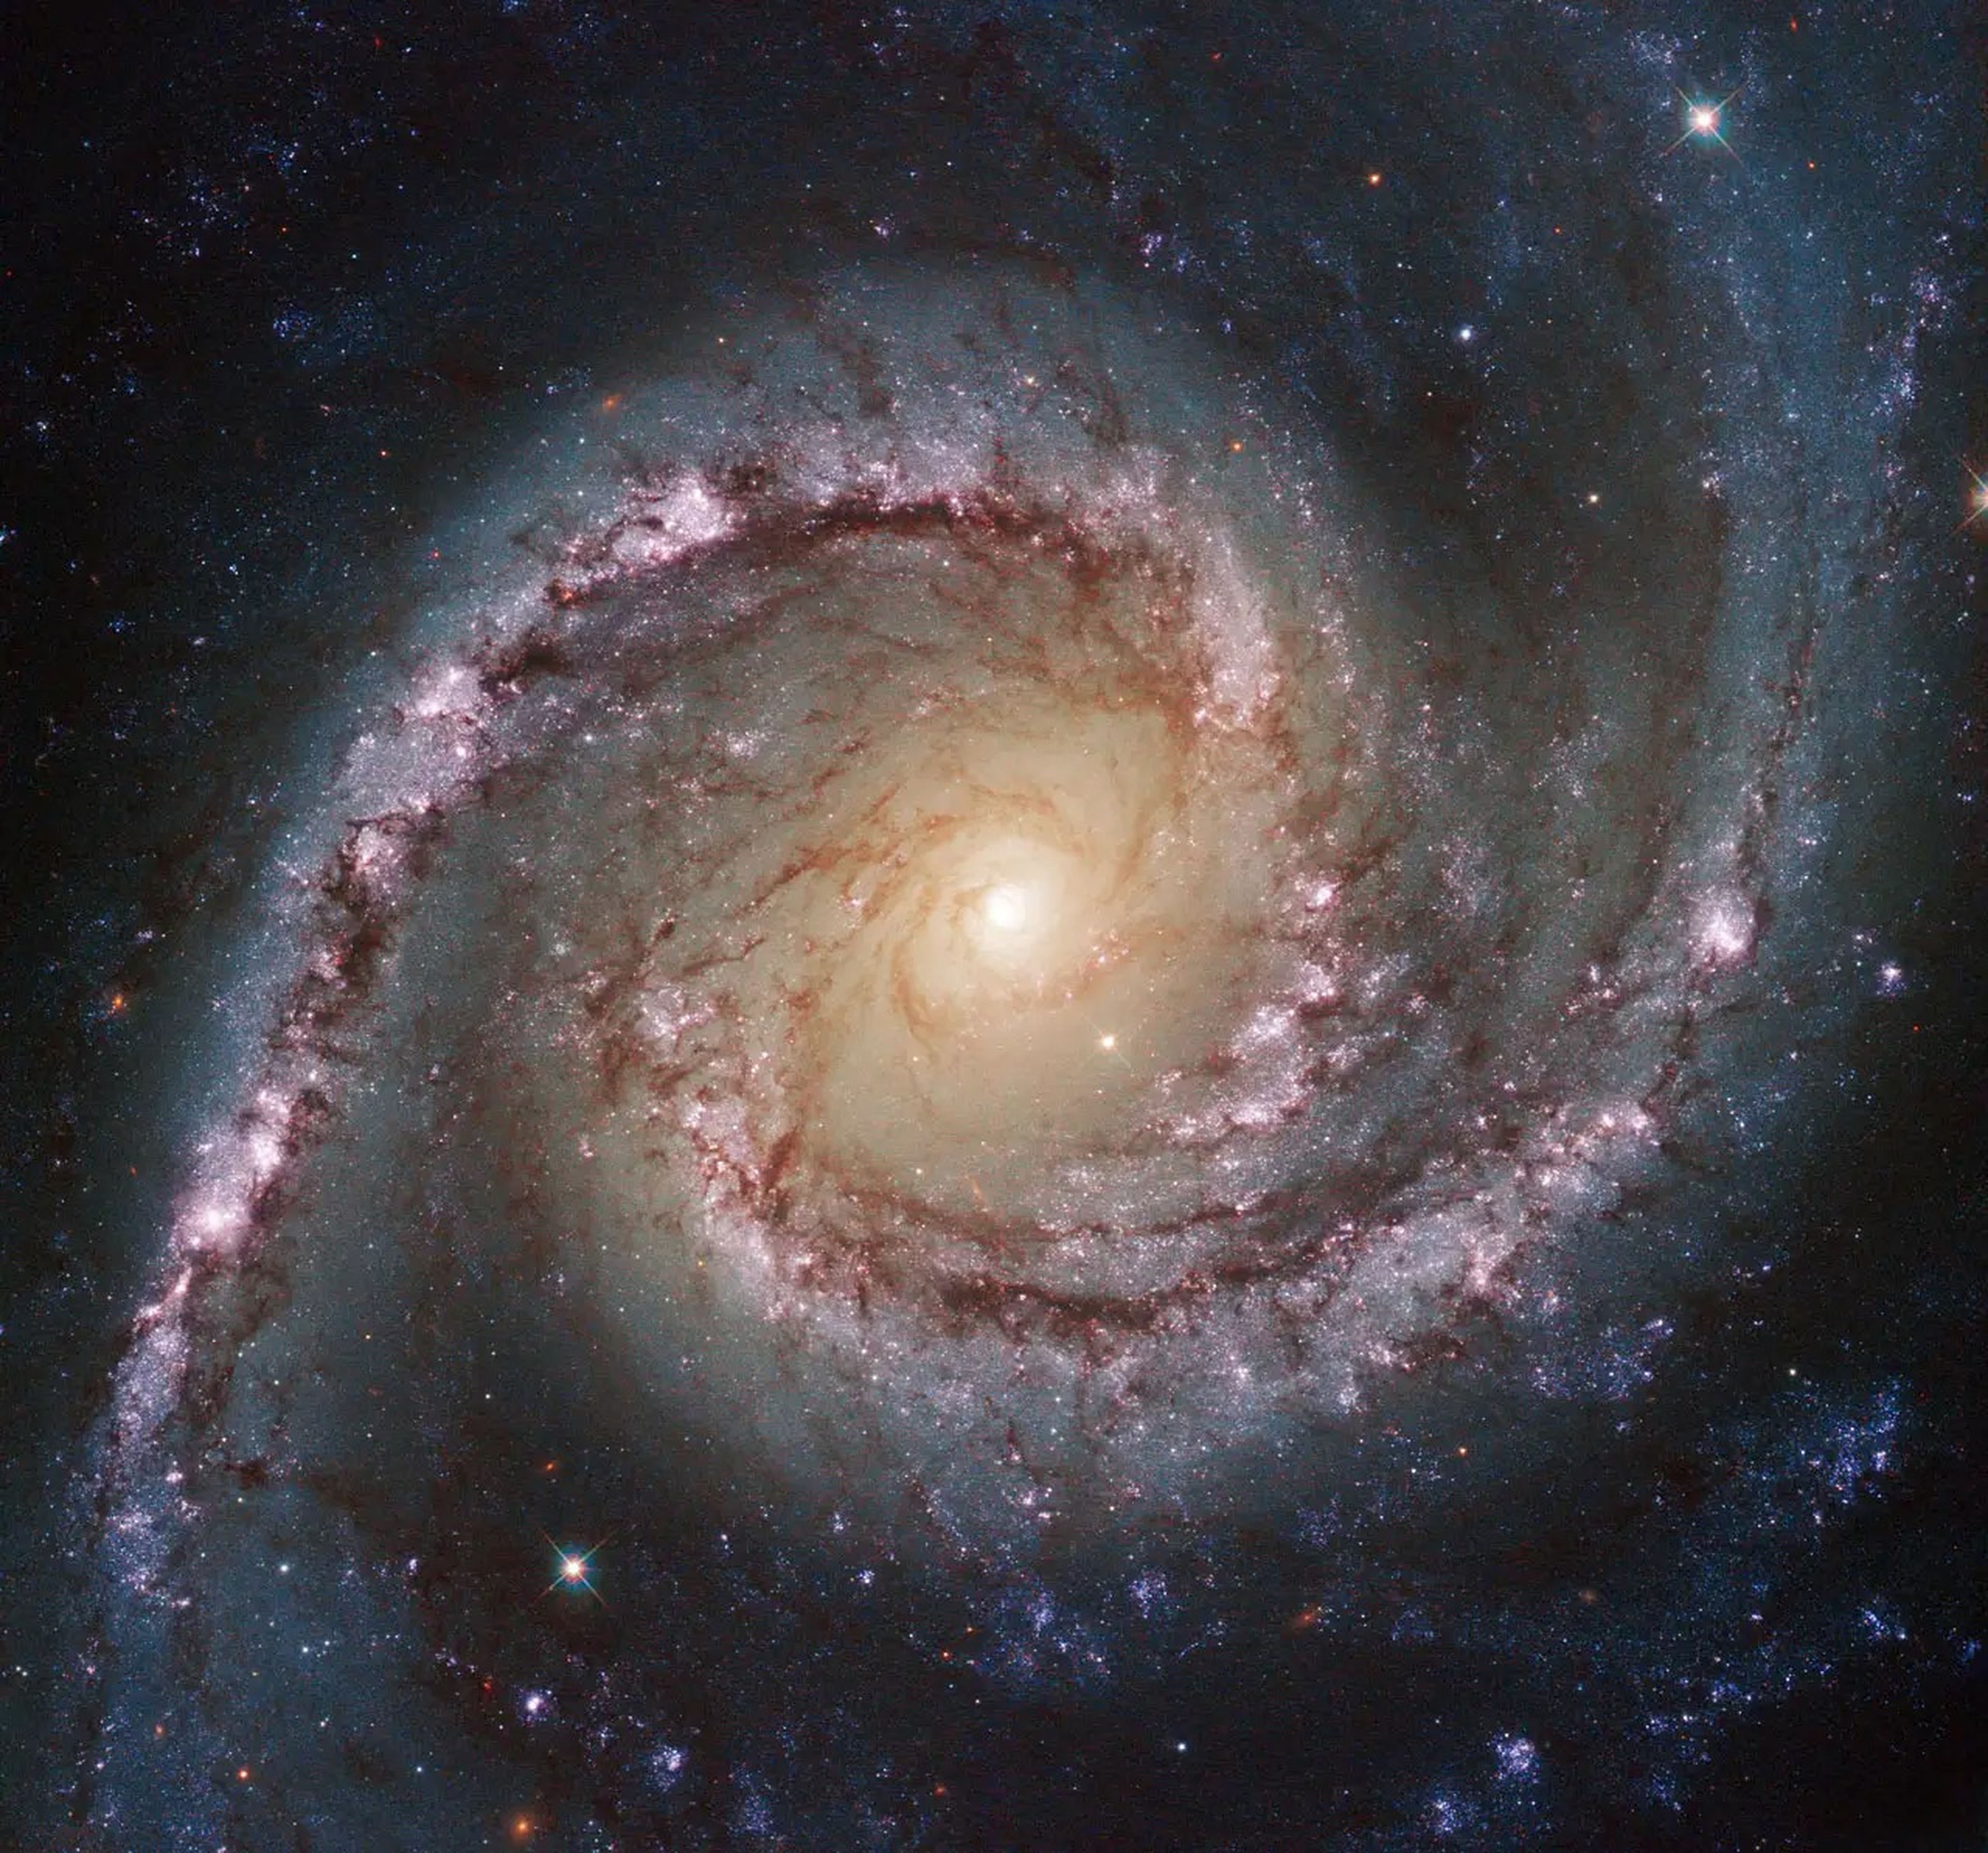 La galaxia espiral NGC 1566, fotografiada por el telescopio Hubble de la NASA.